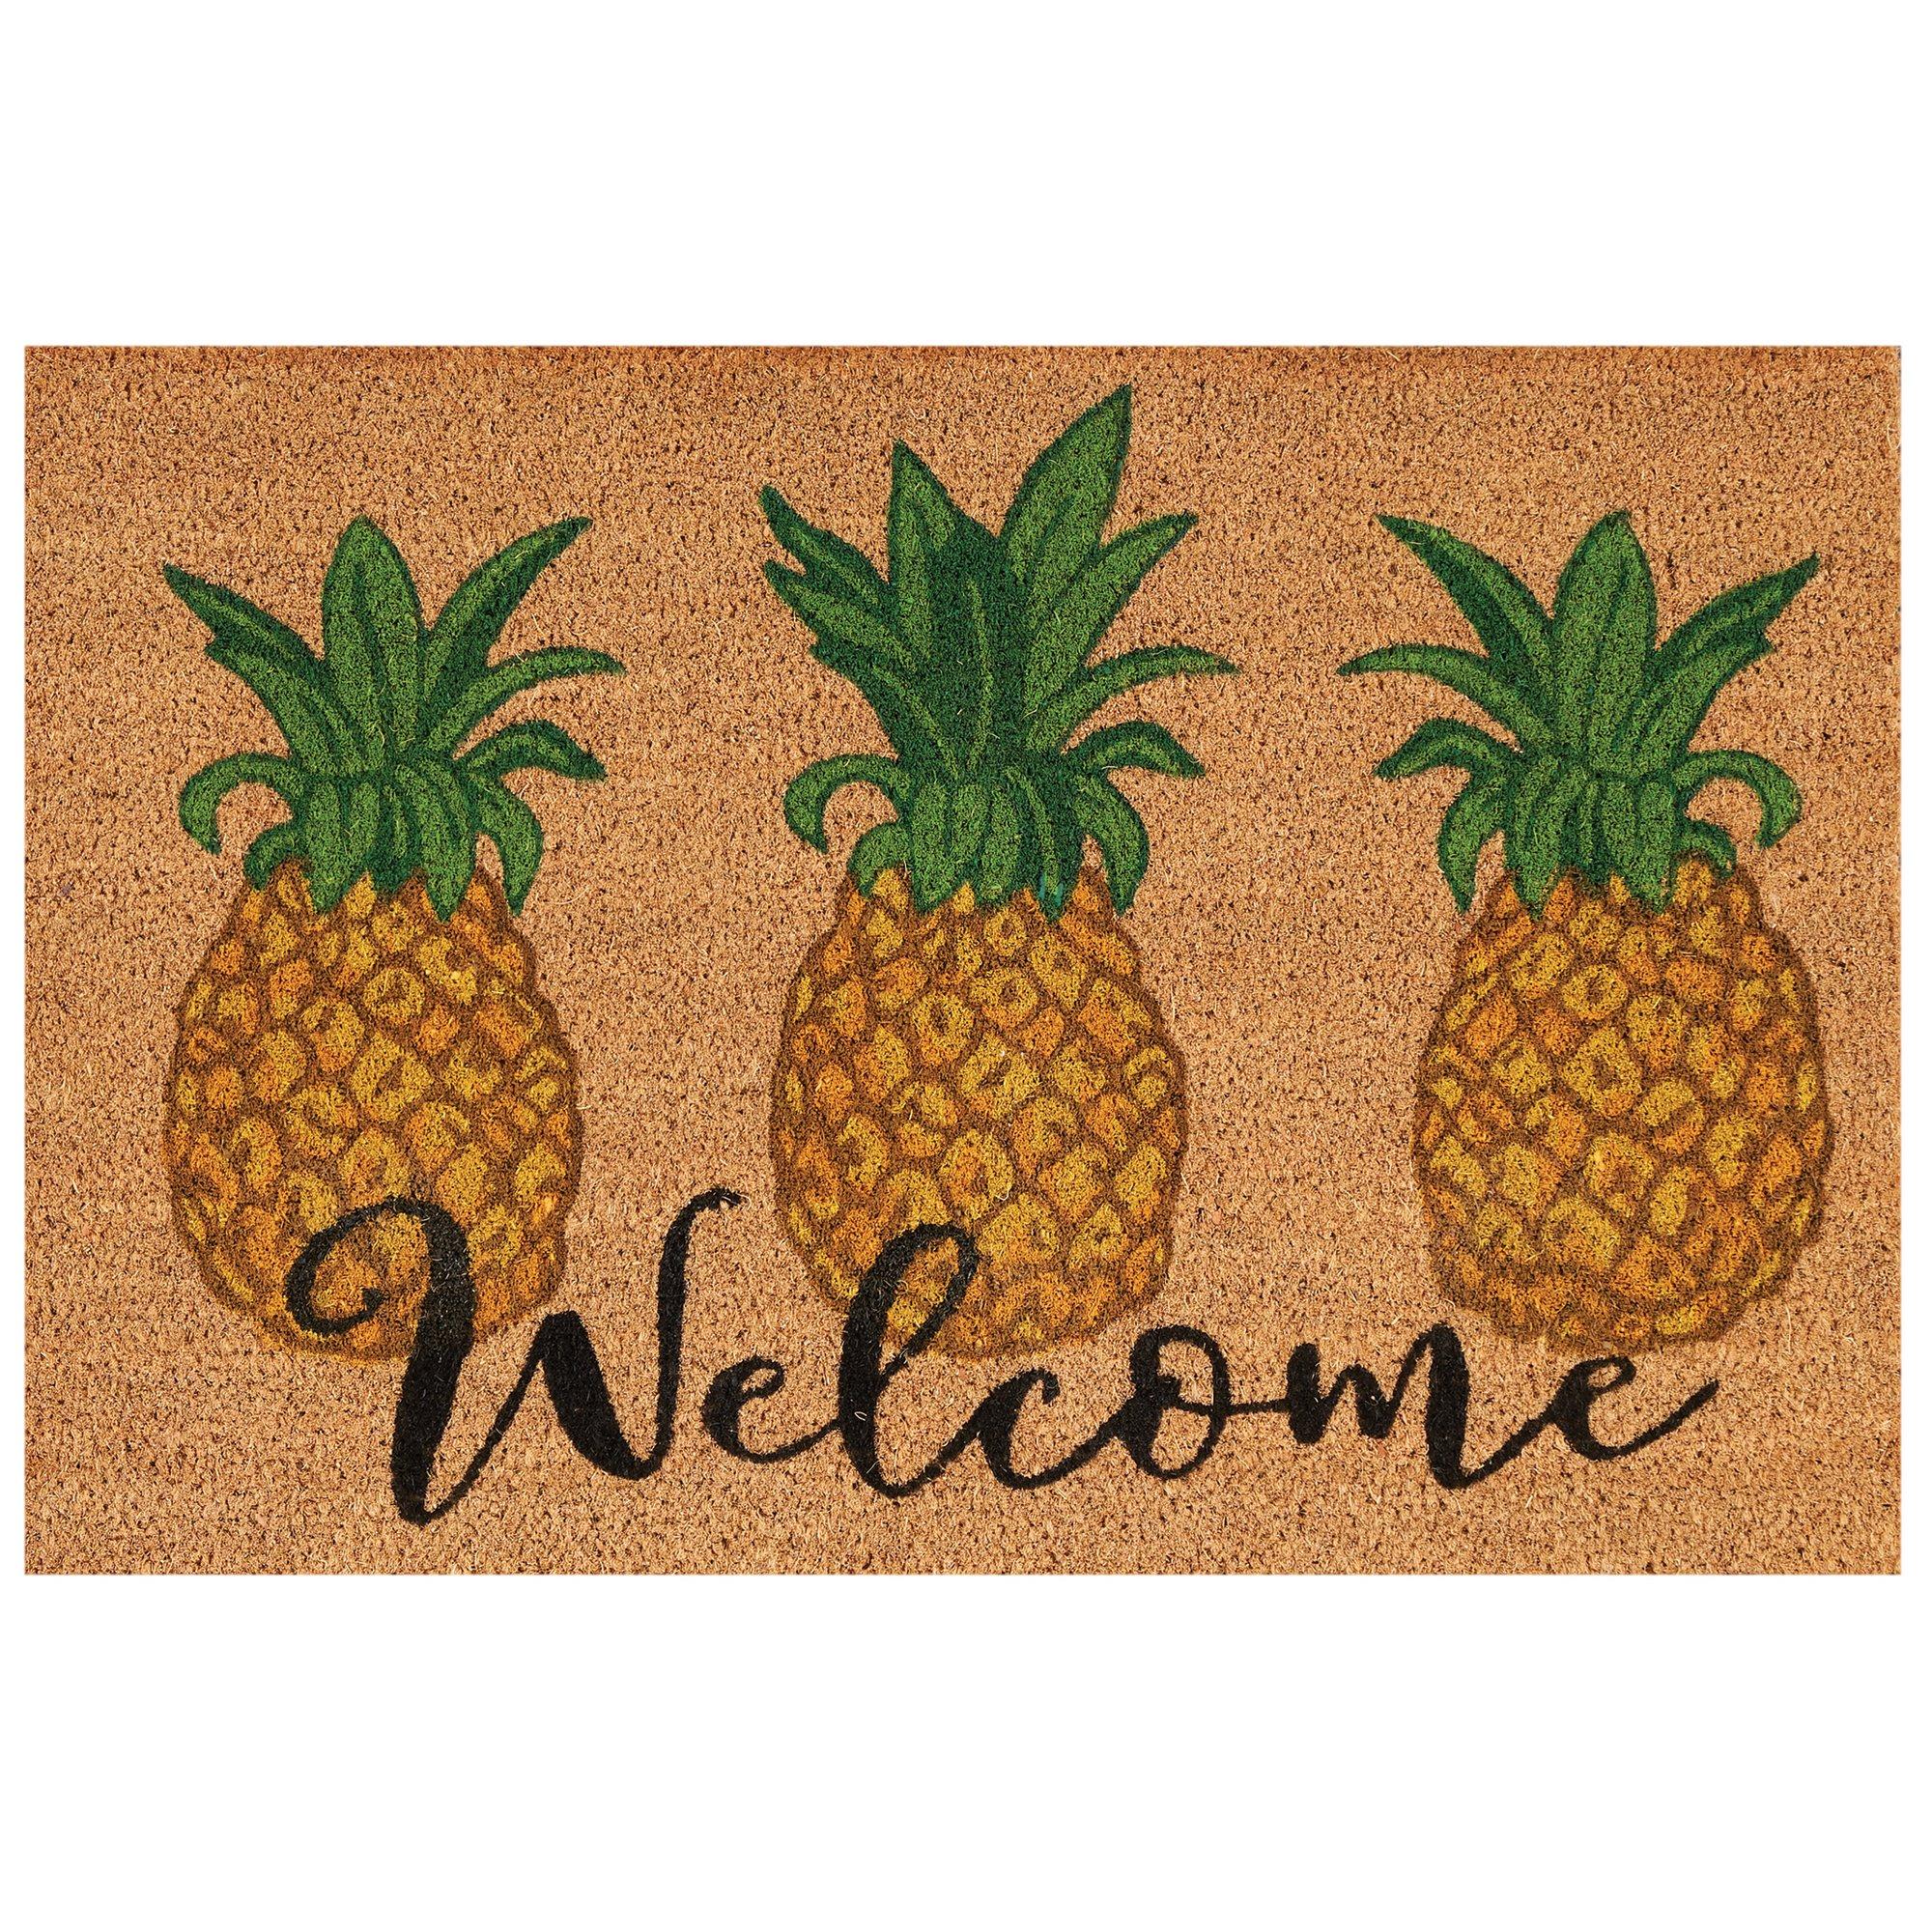 Welcome Pineapples Coir Doormat